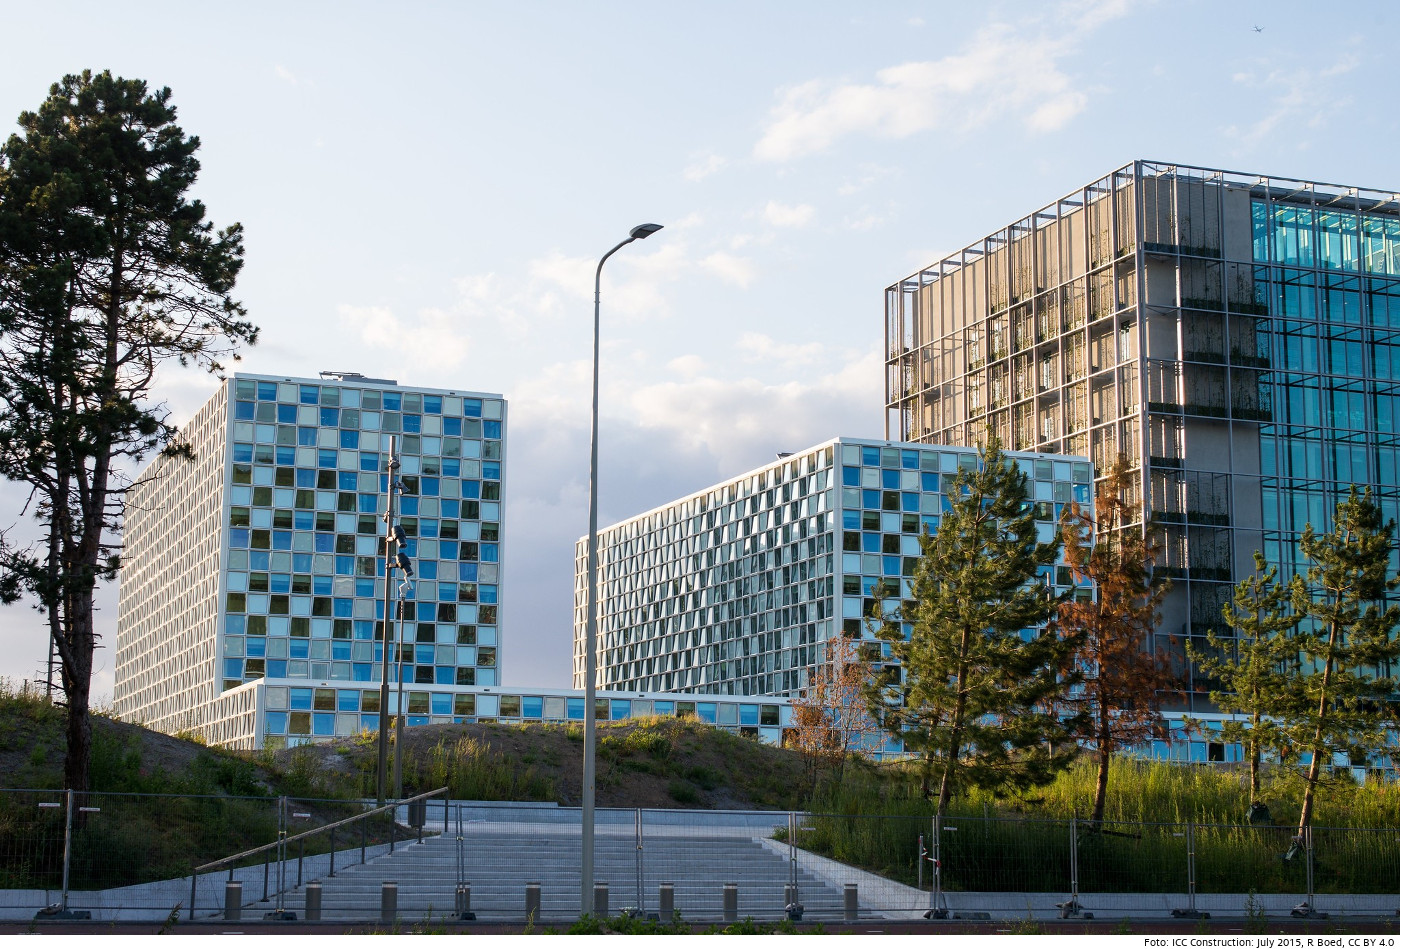 Gebäude des Internationalen Strafgerichtshofs in Den Haag in den Niederlanden. Foto: ICC Construction: July 2015, R Boed, CC BY 4.0